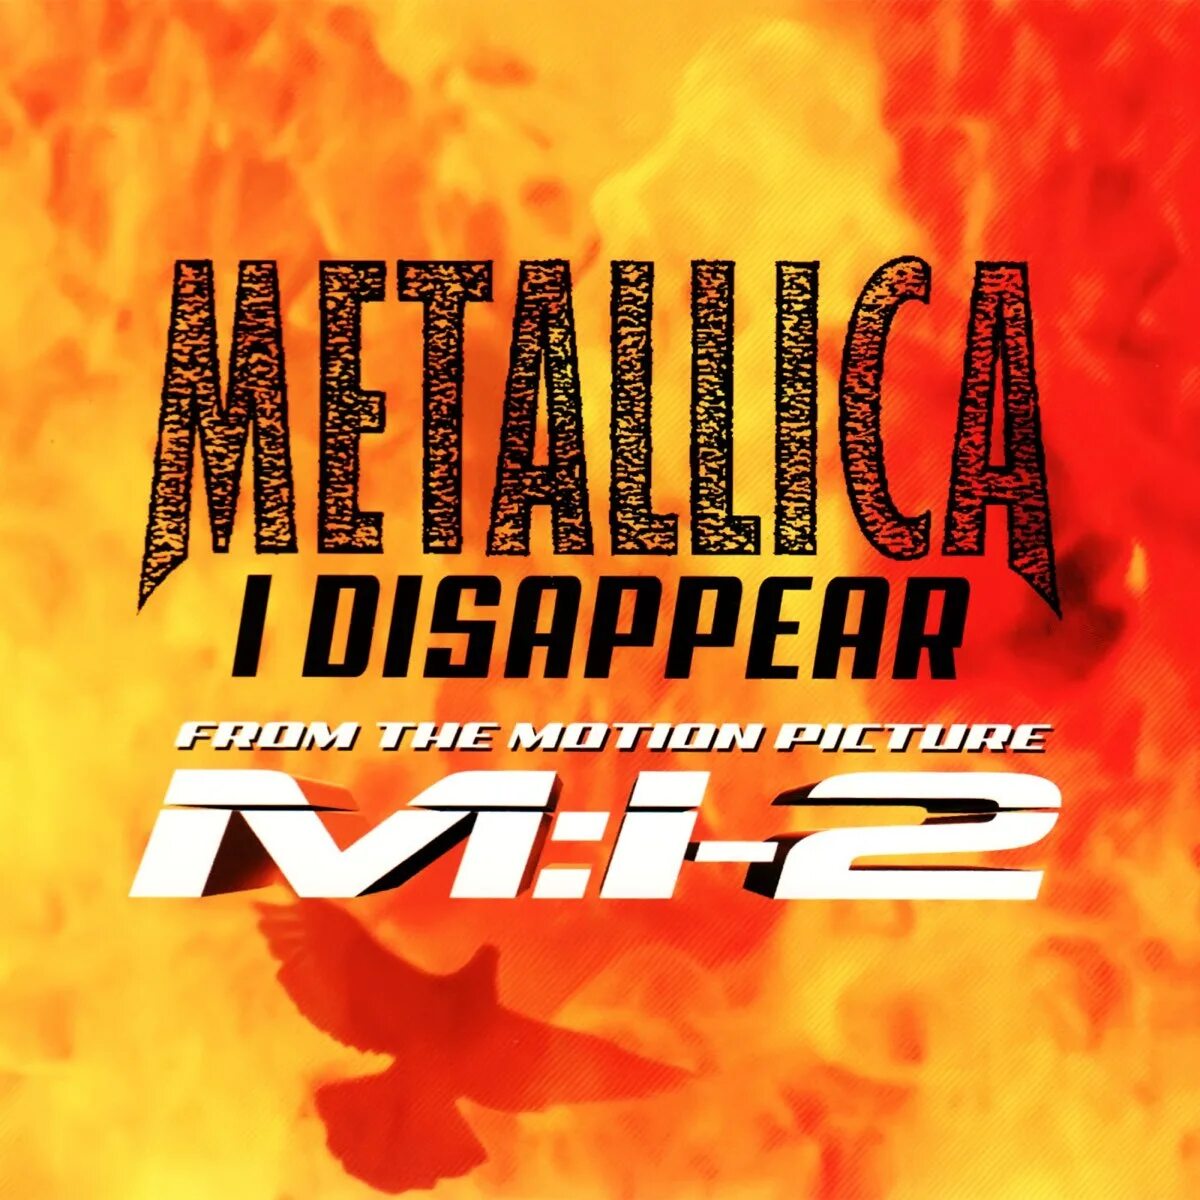 Metallica i disappear. Metallica - 2000 - i disappear. Metallica i disappear обложка. Metallica Single обложка. Металлик disappear.